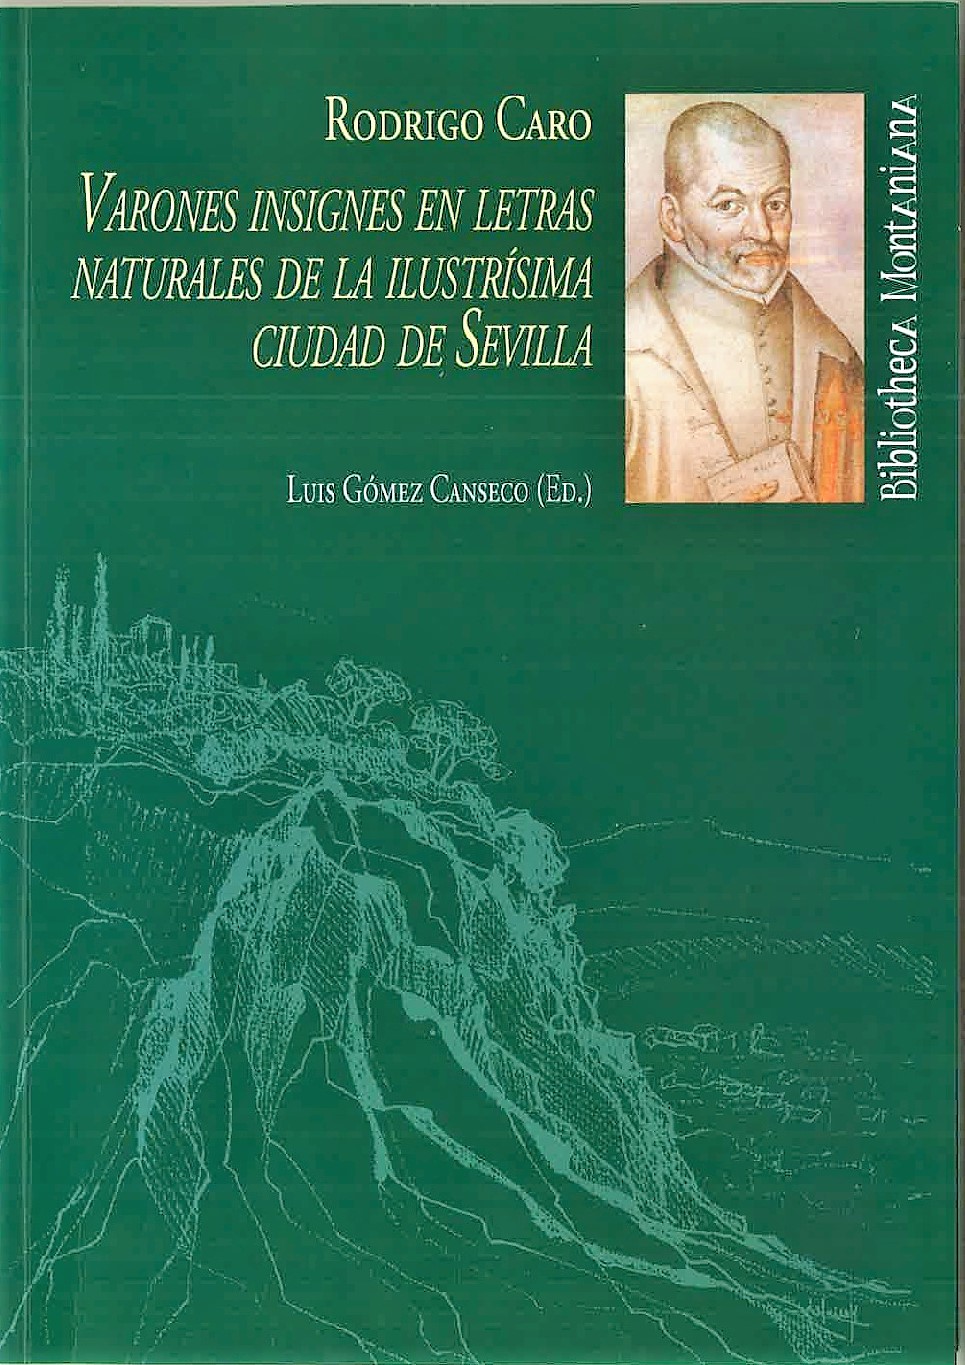 Imagen de portada del libro Varones insignes en letras naturales de la Ilustrísima ciudad de Sevilla